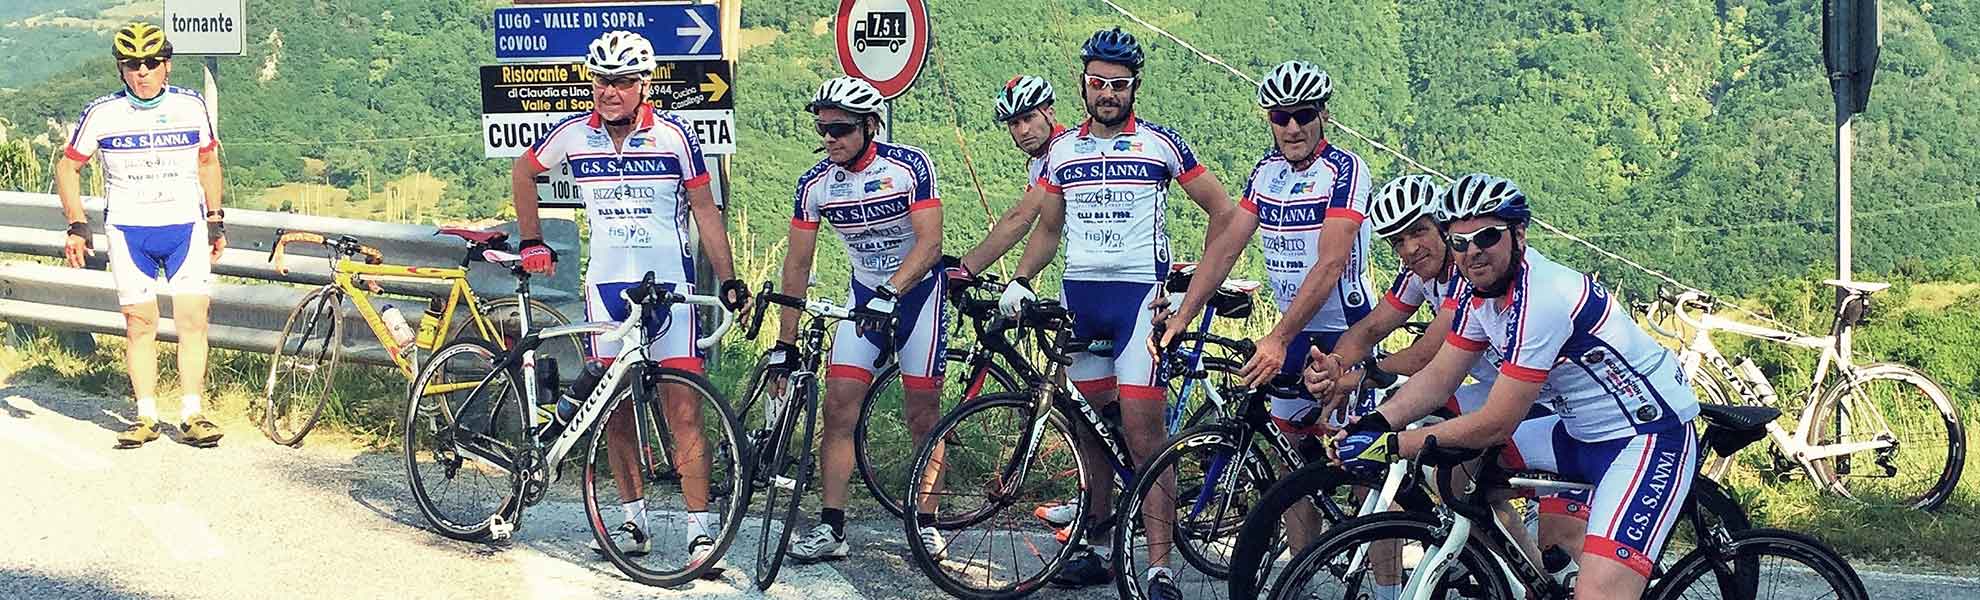 Squadra di ciclismo sponsorizzata dalla ditta Dal Fior